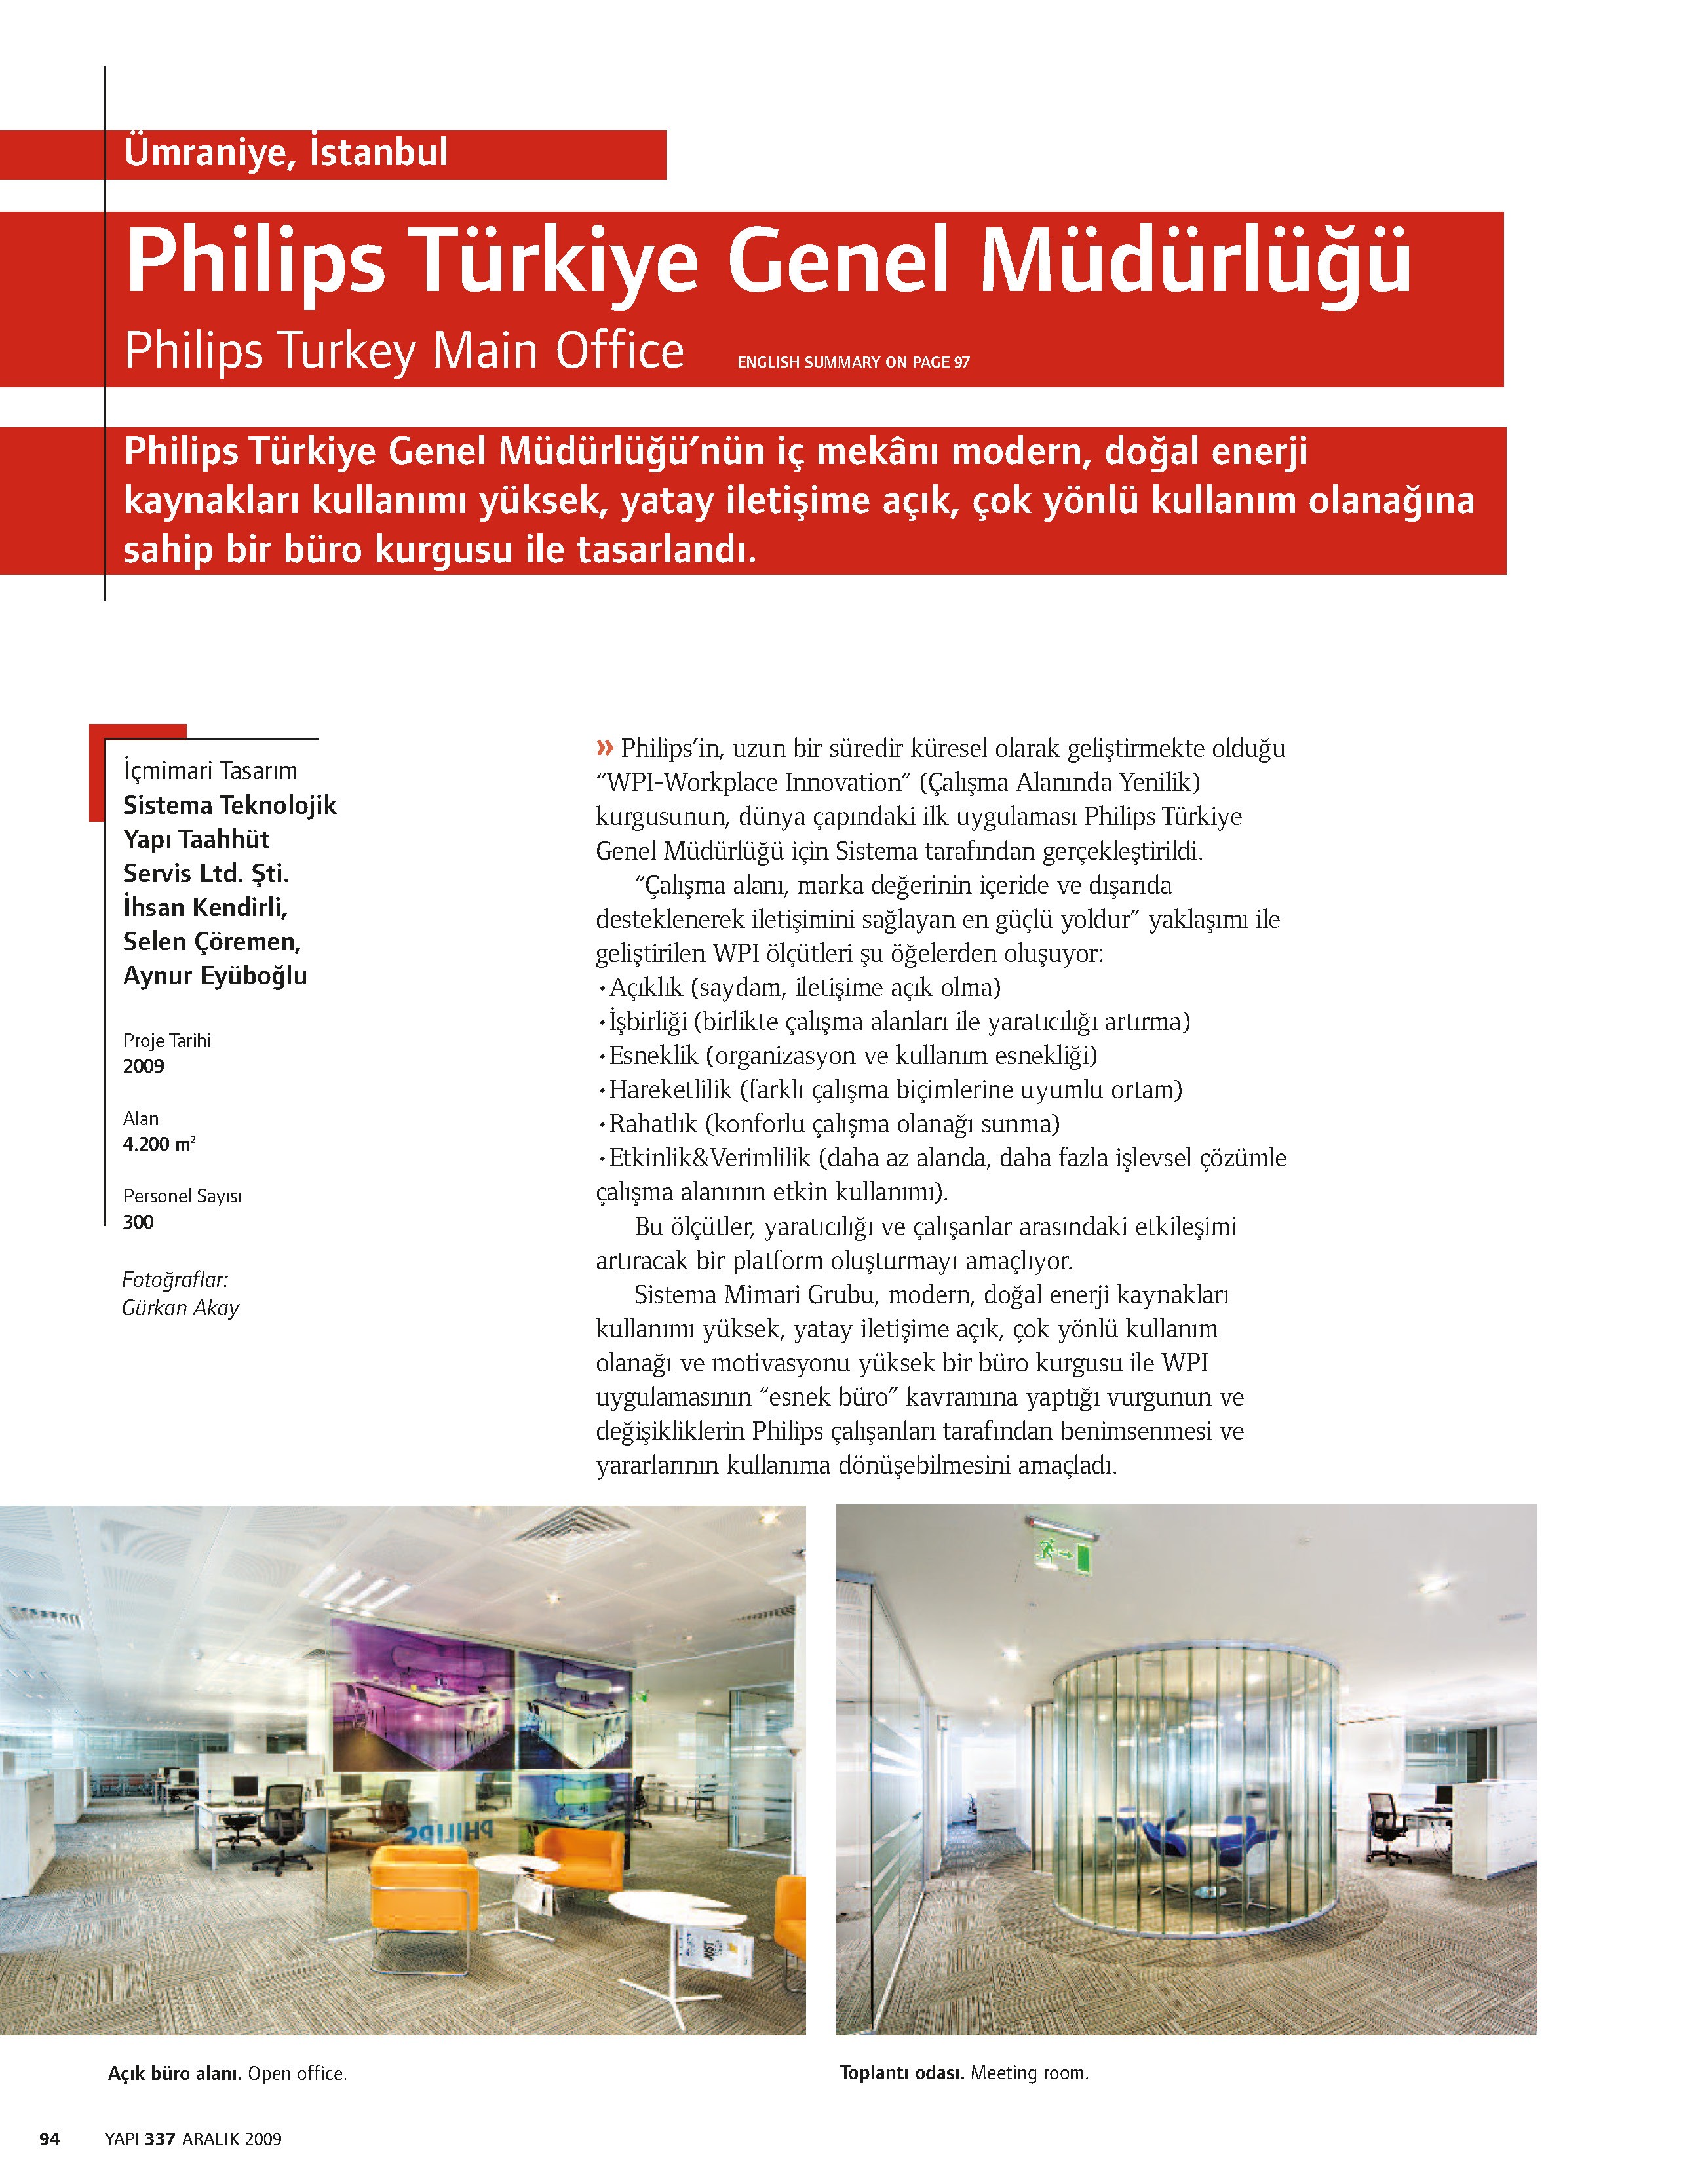 Philips Turkey Main Office